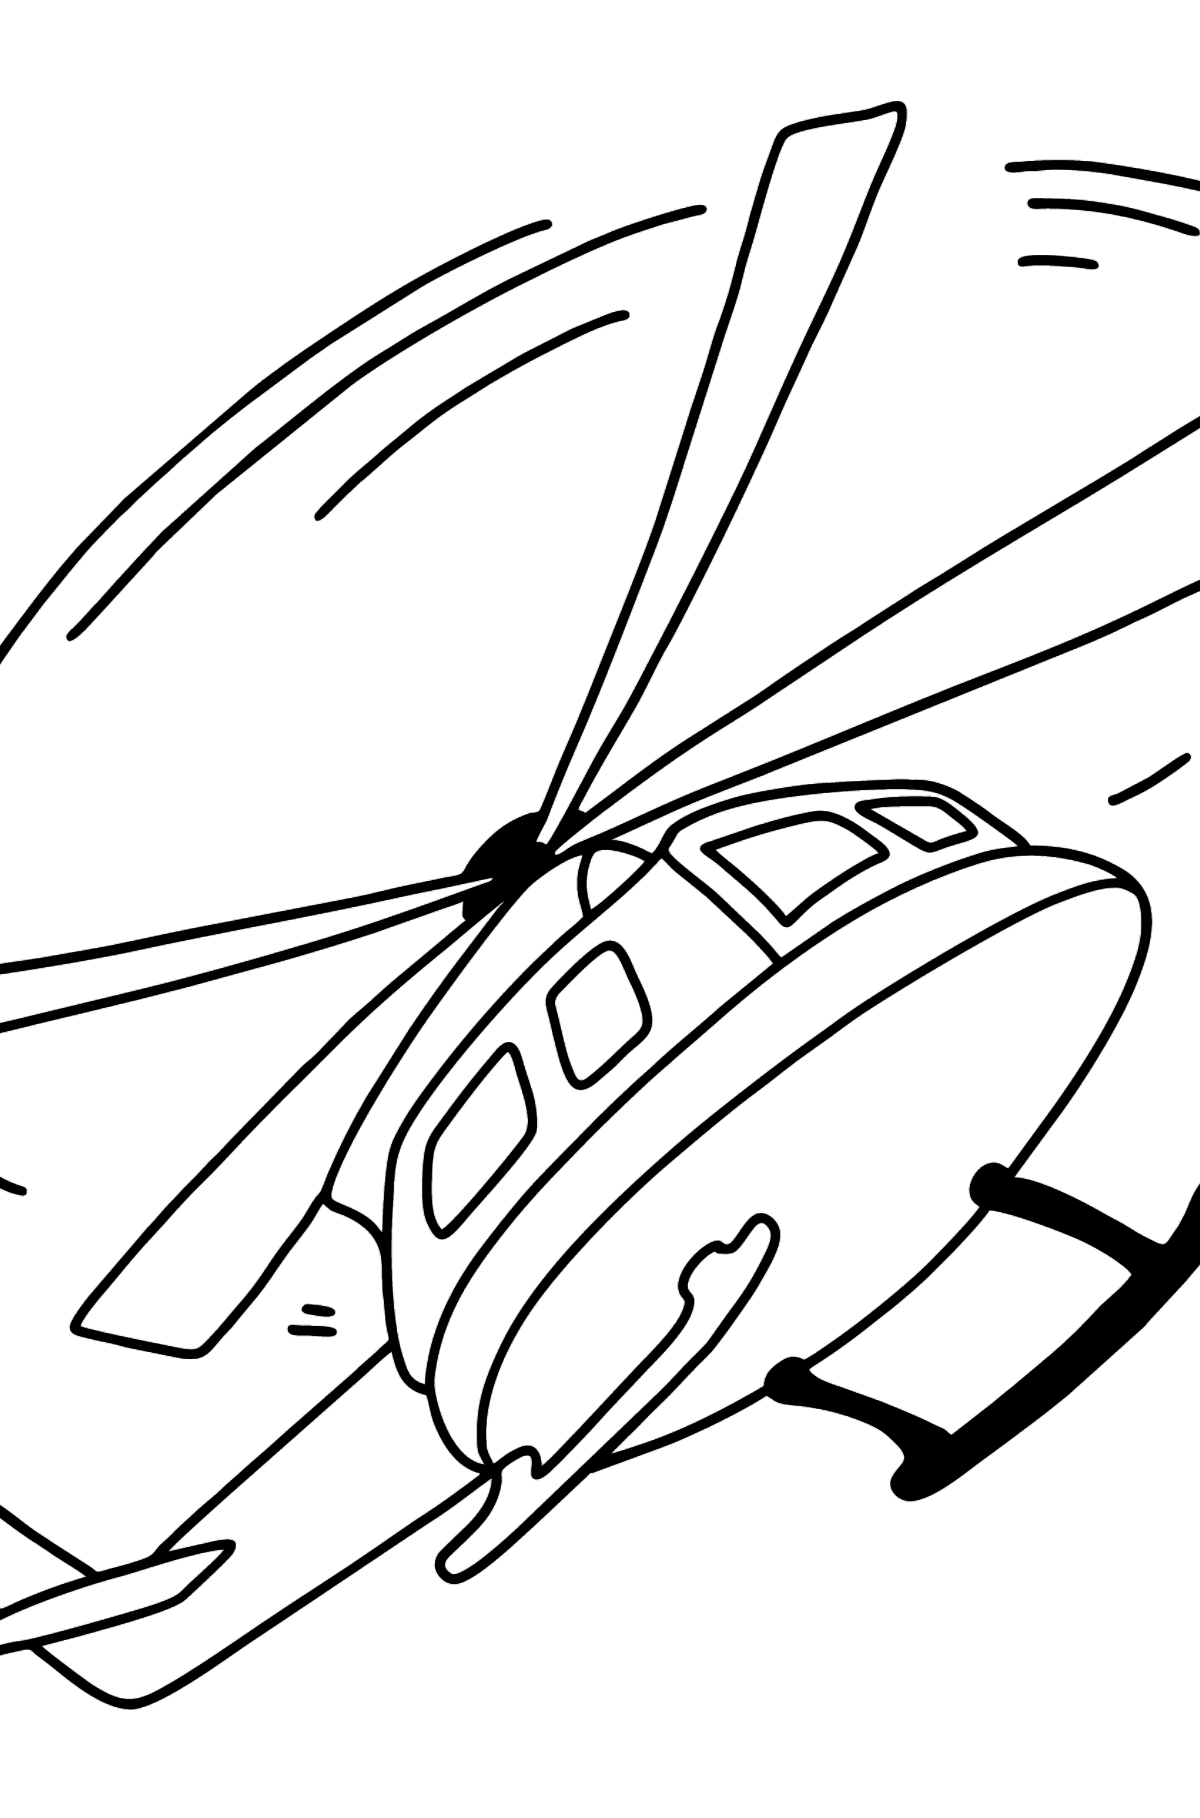 Desen de colorat elicopter online - Desene de colorat pentru copii